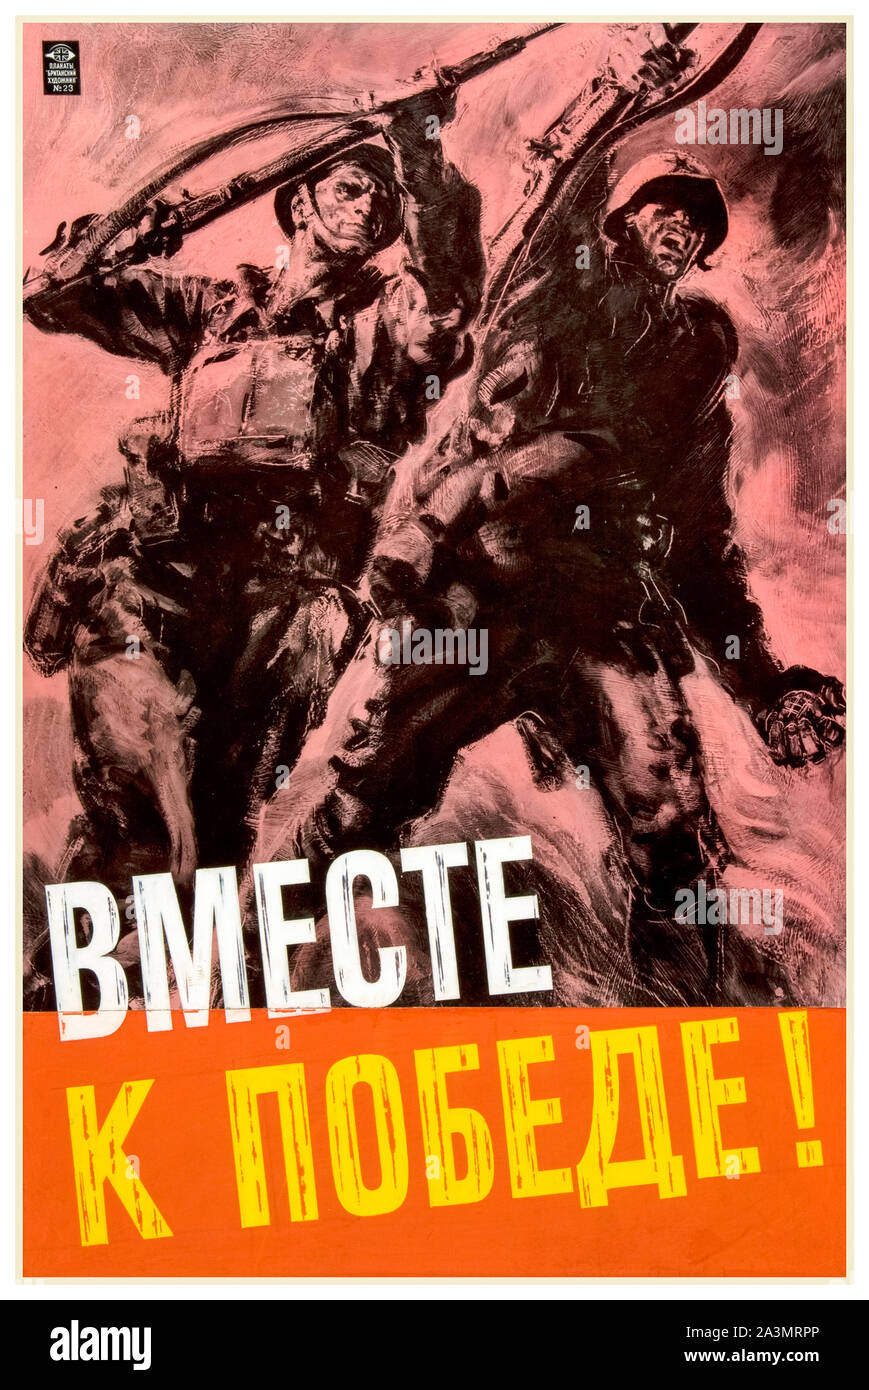 British, WW2, l'unité de la force, de l'allied inter-coopération, ensemble pour la victoire !, les soldats d'infanterie britannique et russe (texte en russe cyrillique script), affiche, 1939-1946 Banque D'Images